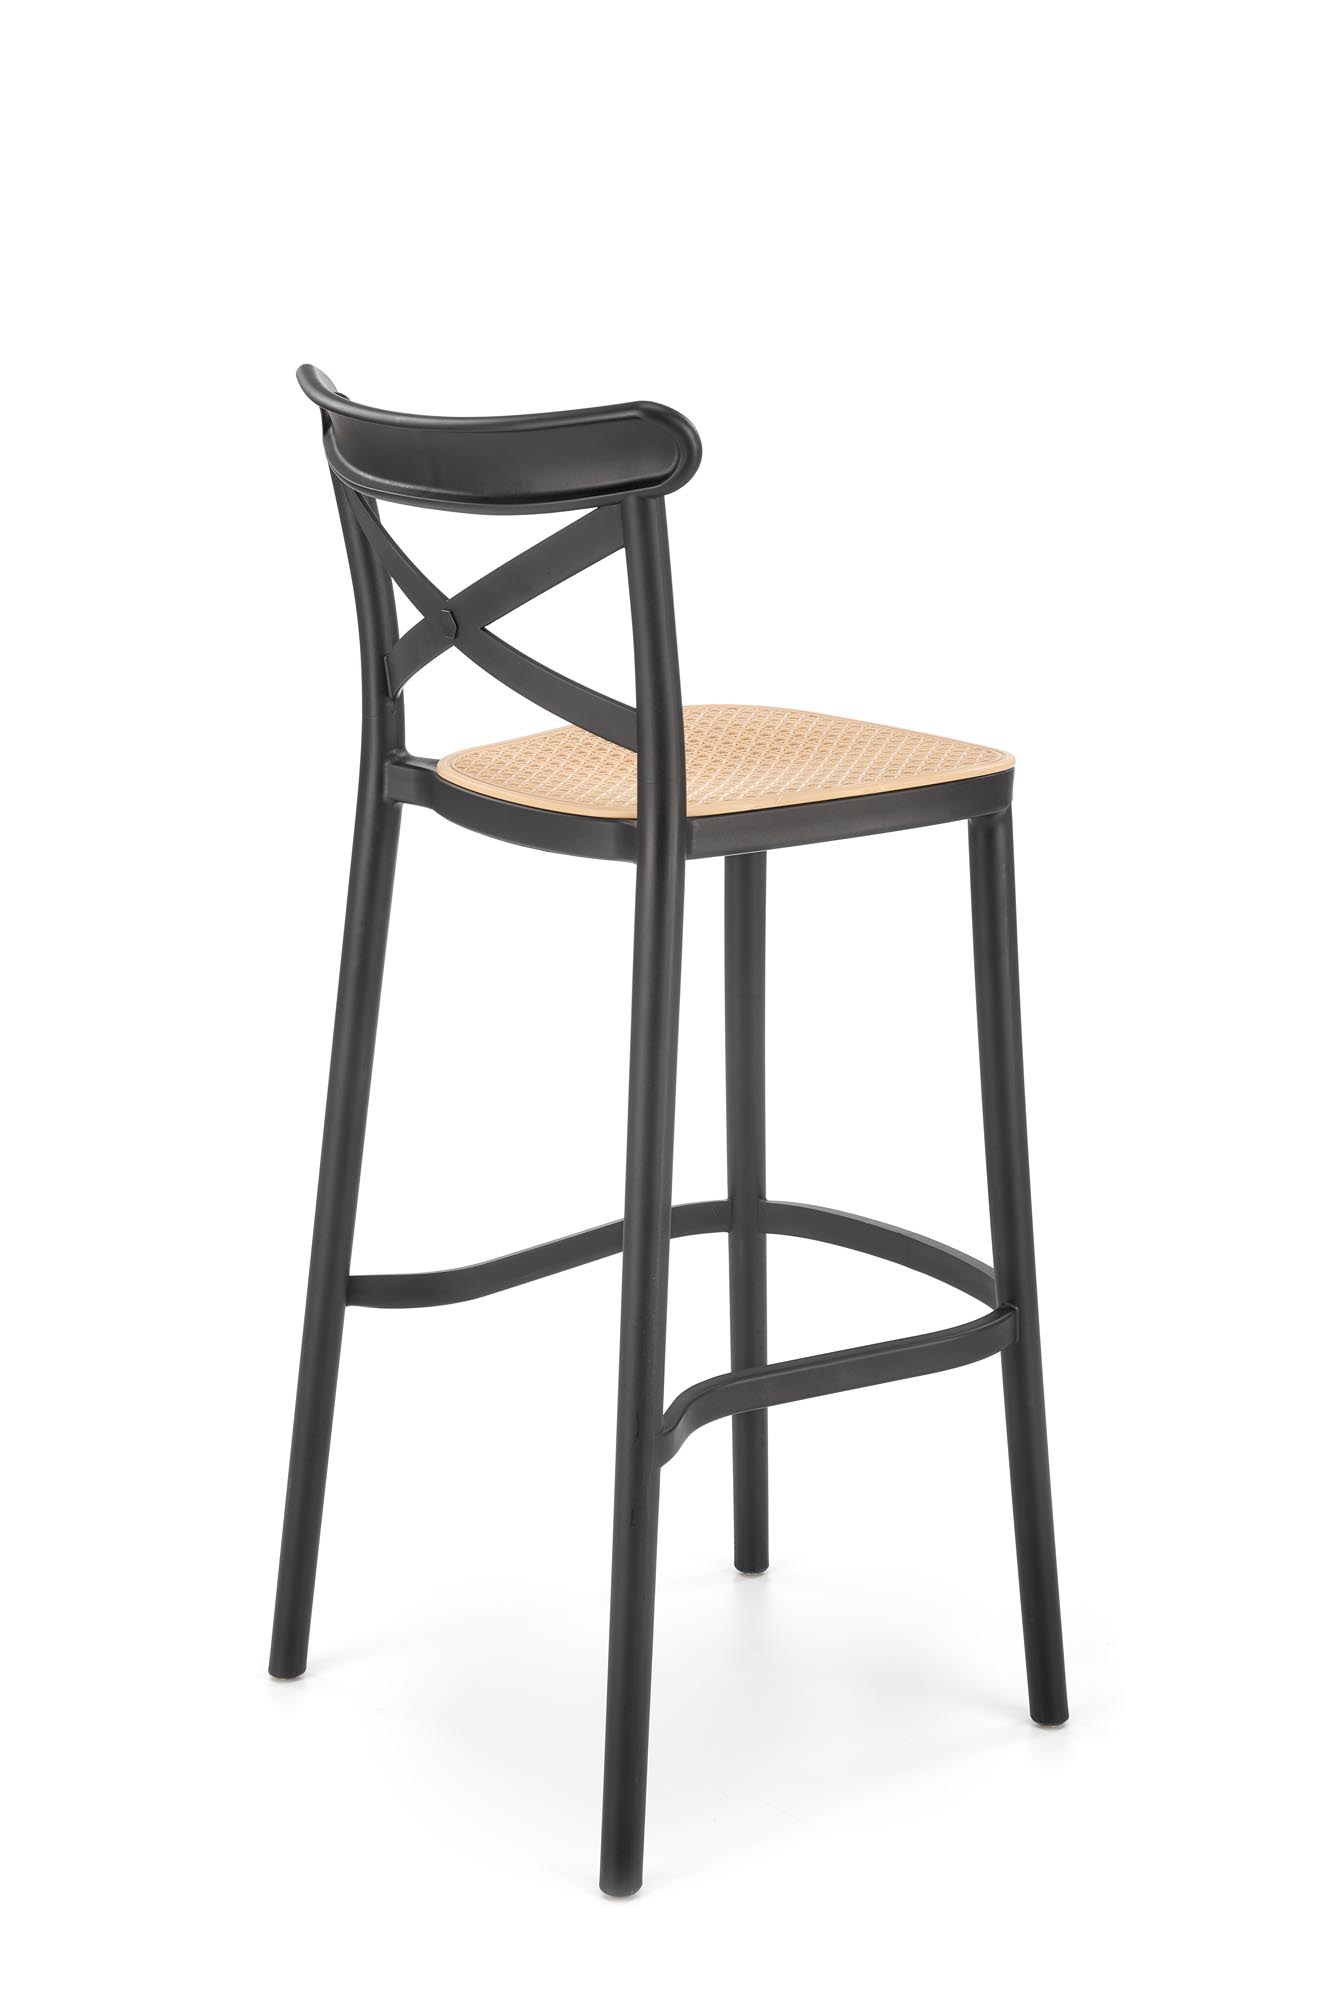 H111 Barová židle Černý / Hnědý Barová židle z umělé hmoty h111 - Černý / Hnědý